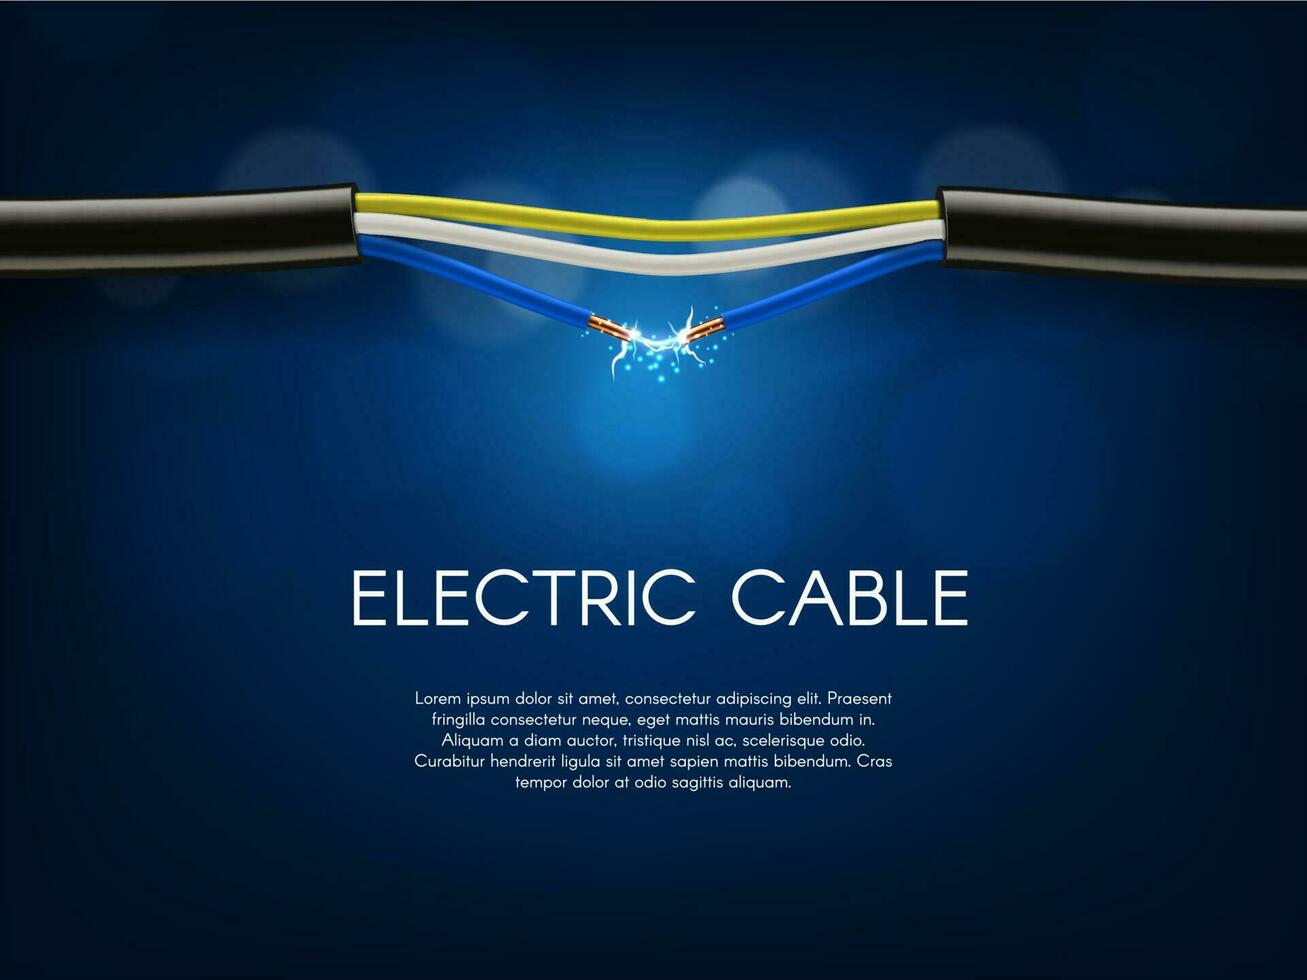 kort krets i elektrisk kabel- vektor baner